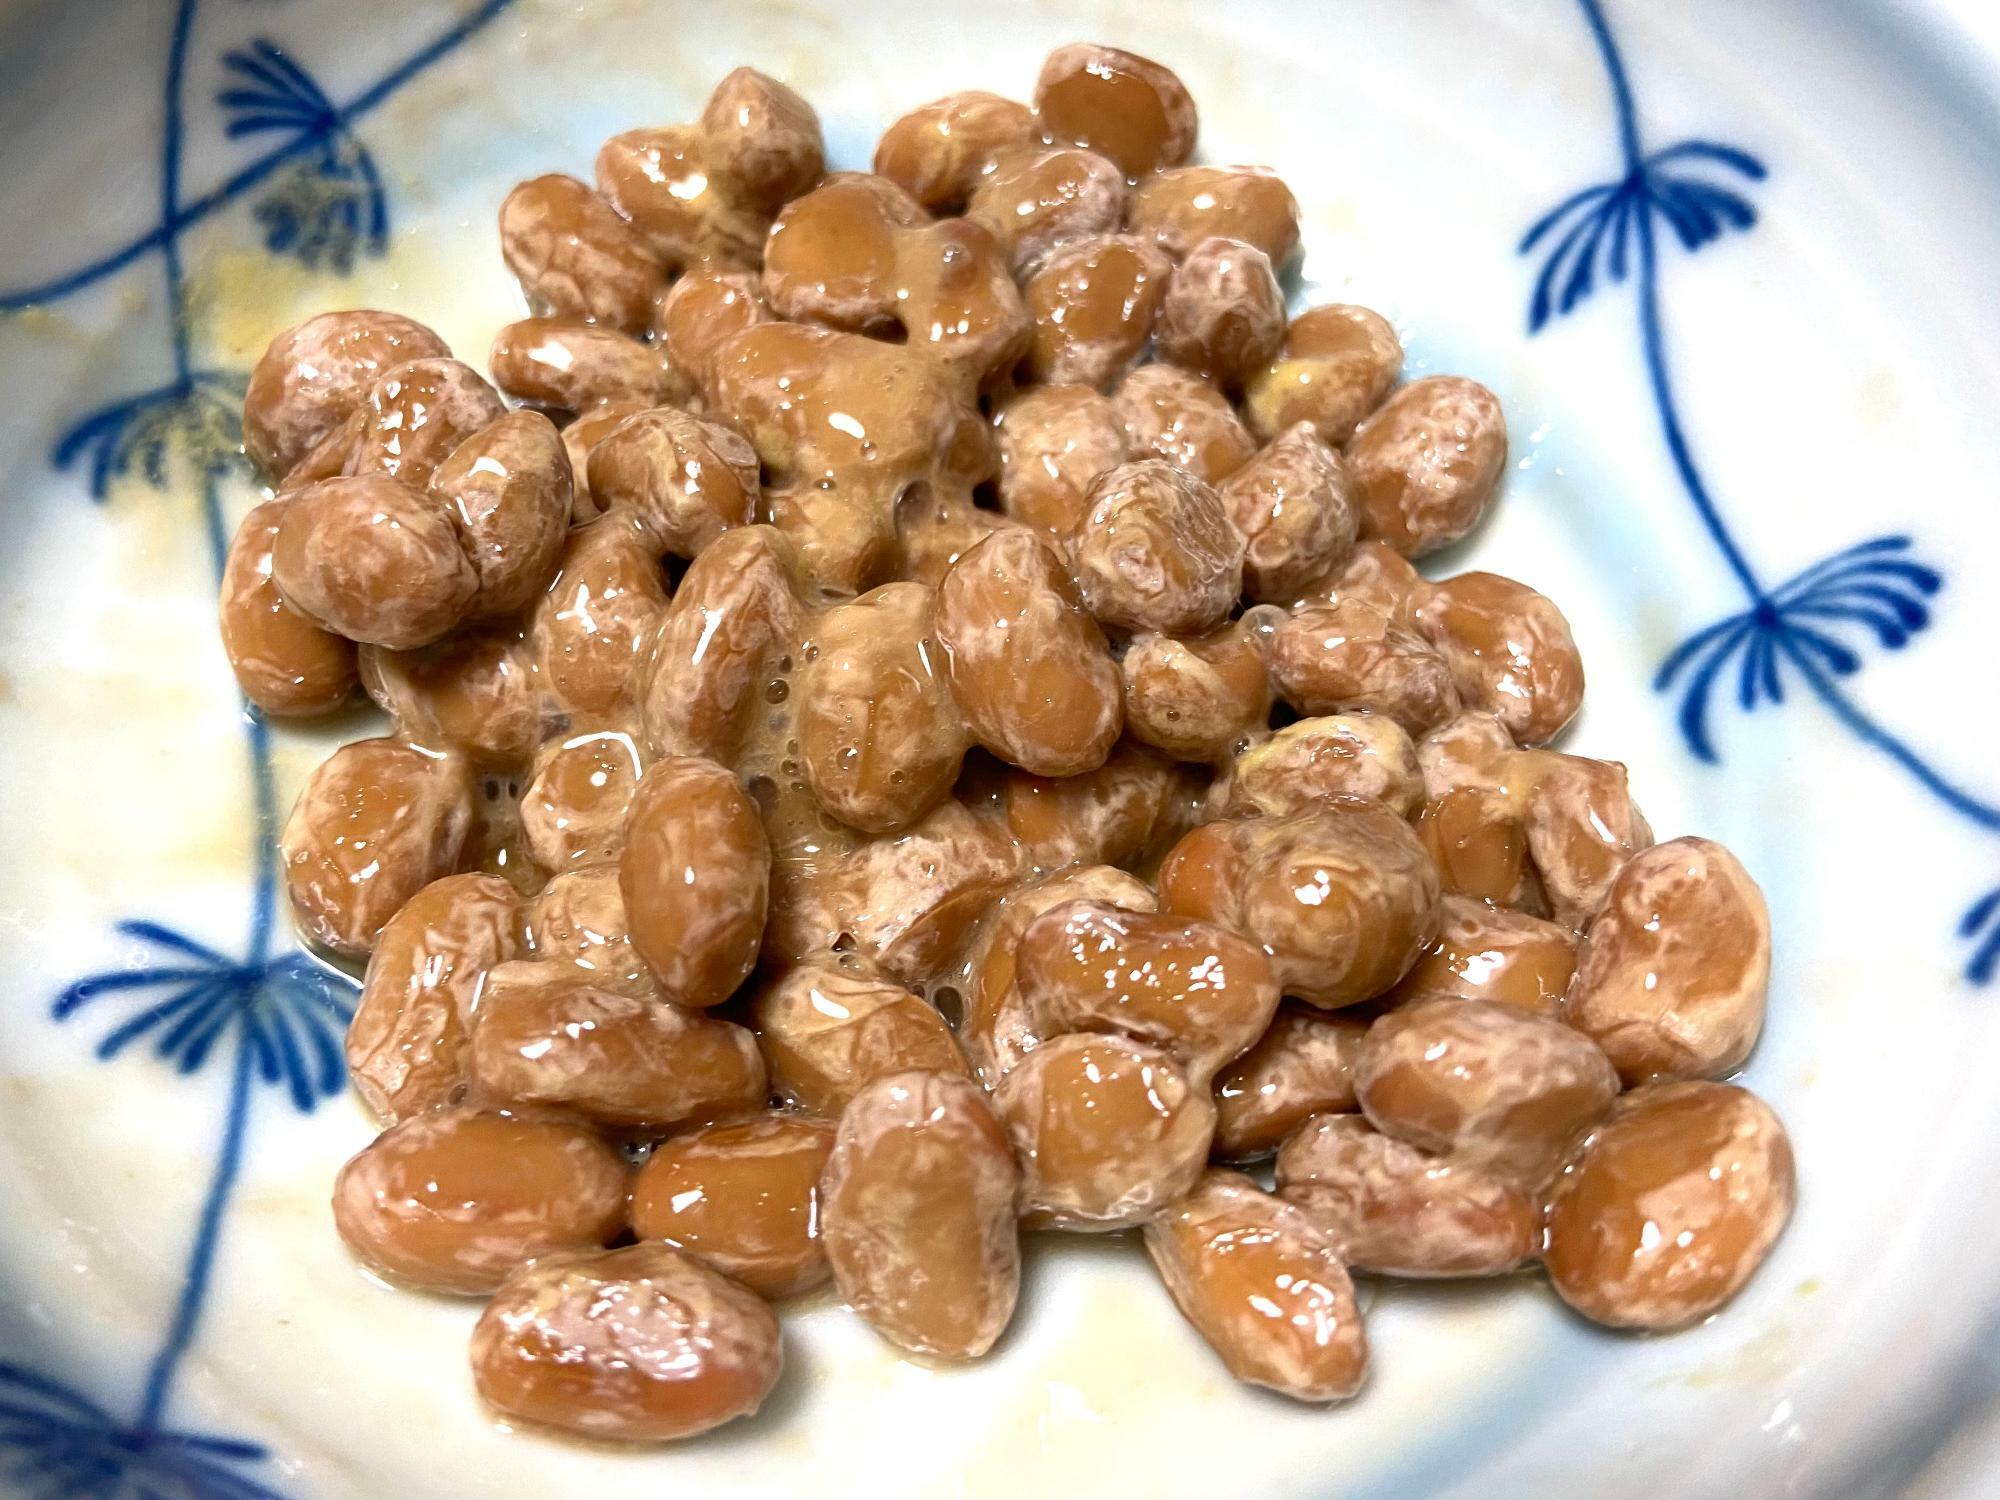 大粒納豆は粒が大きく風味豊かな大変美味しい納豆で、このままでいただきました。